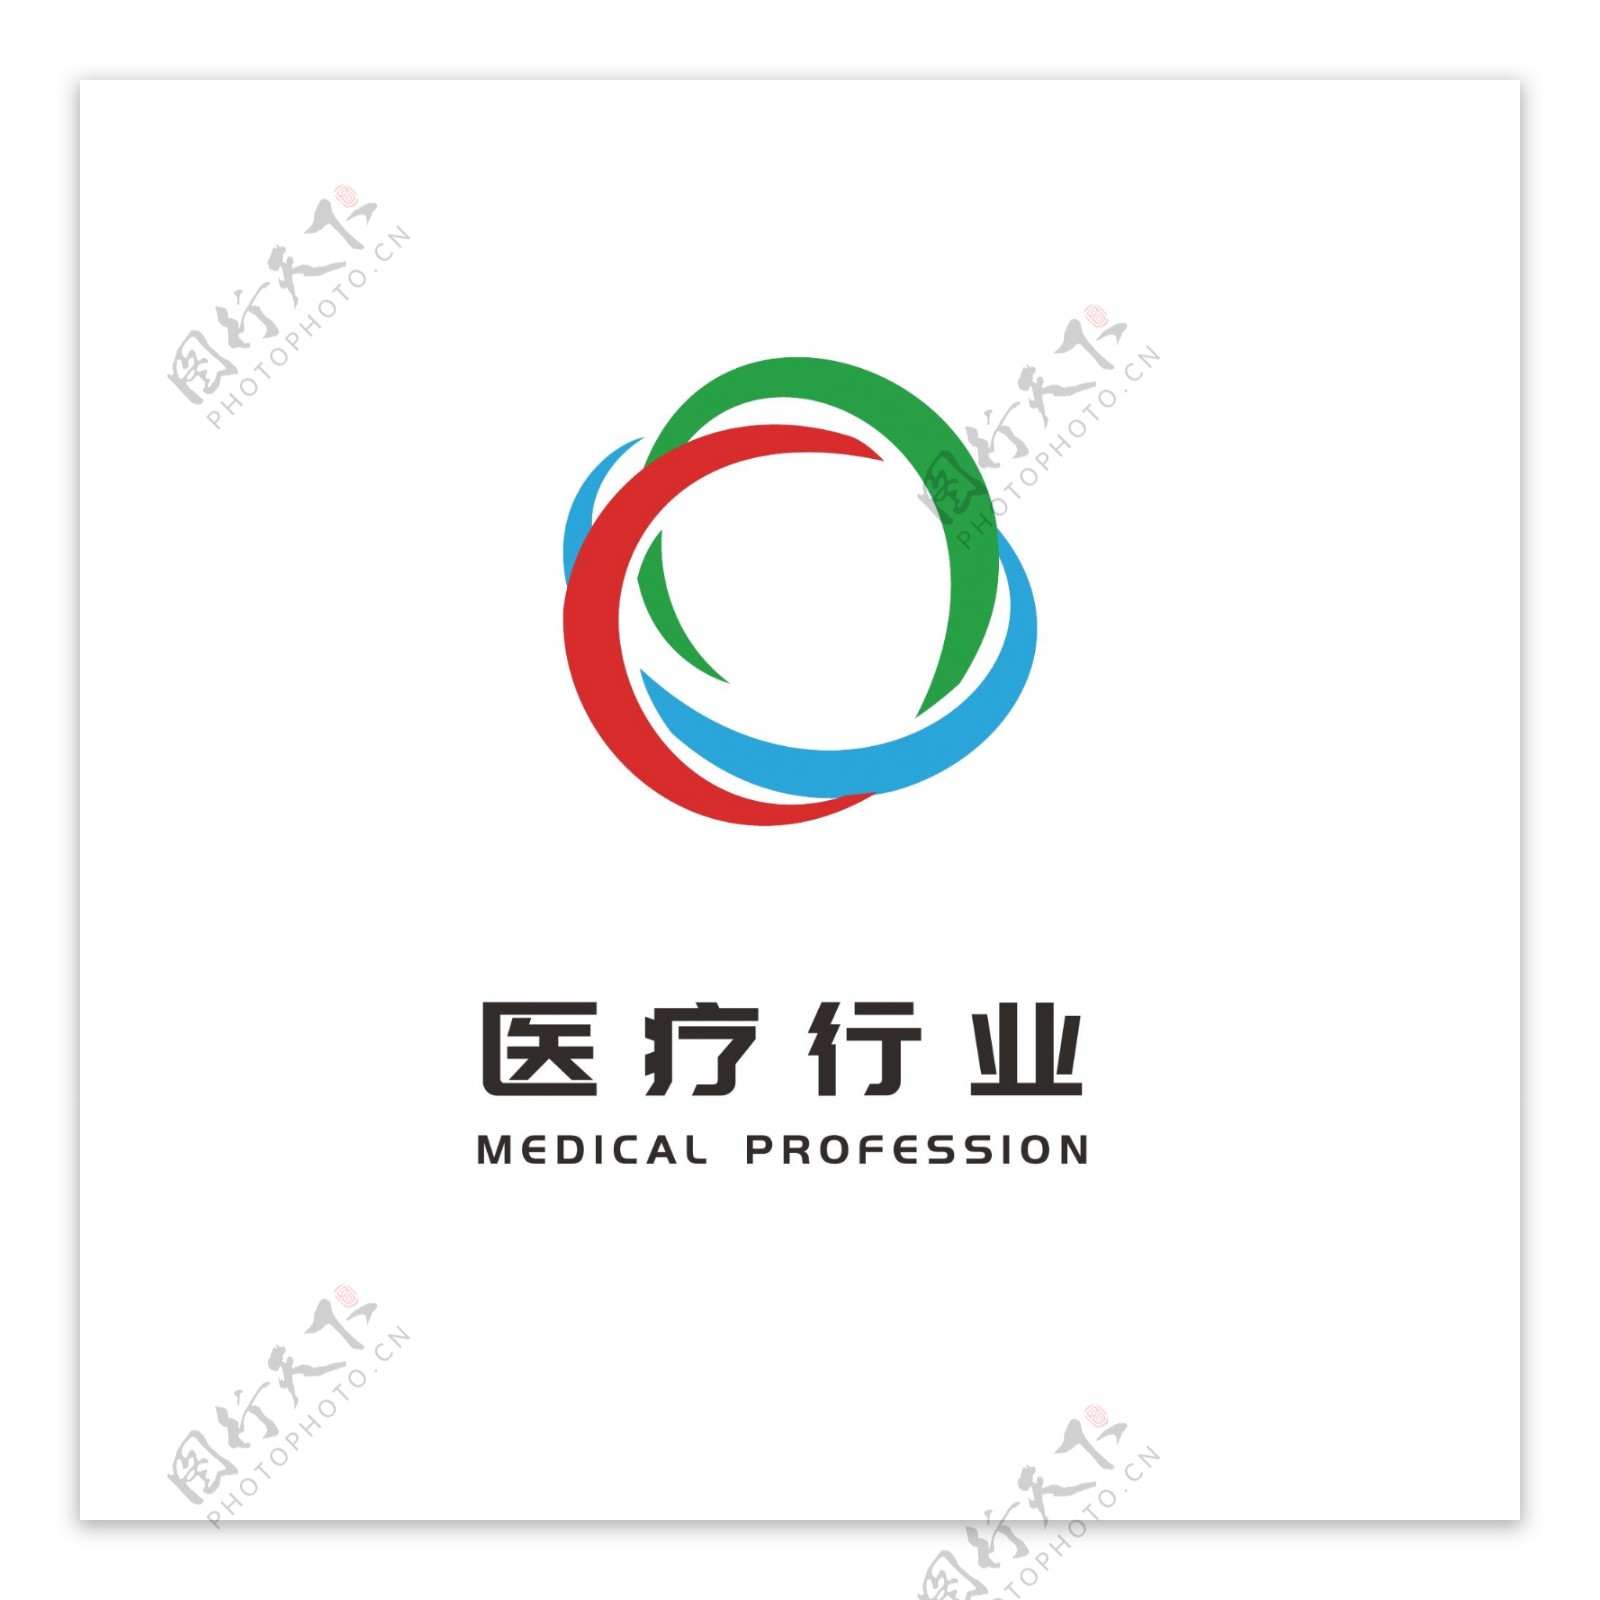 医疗行业卫生保健医药logo大众通用标志